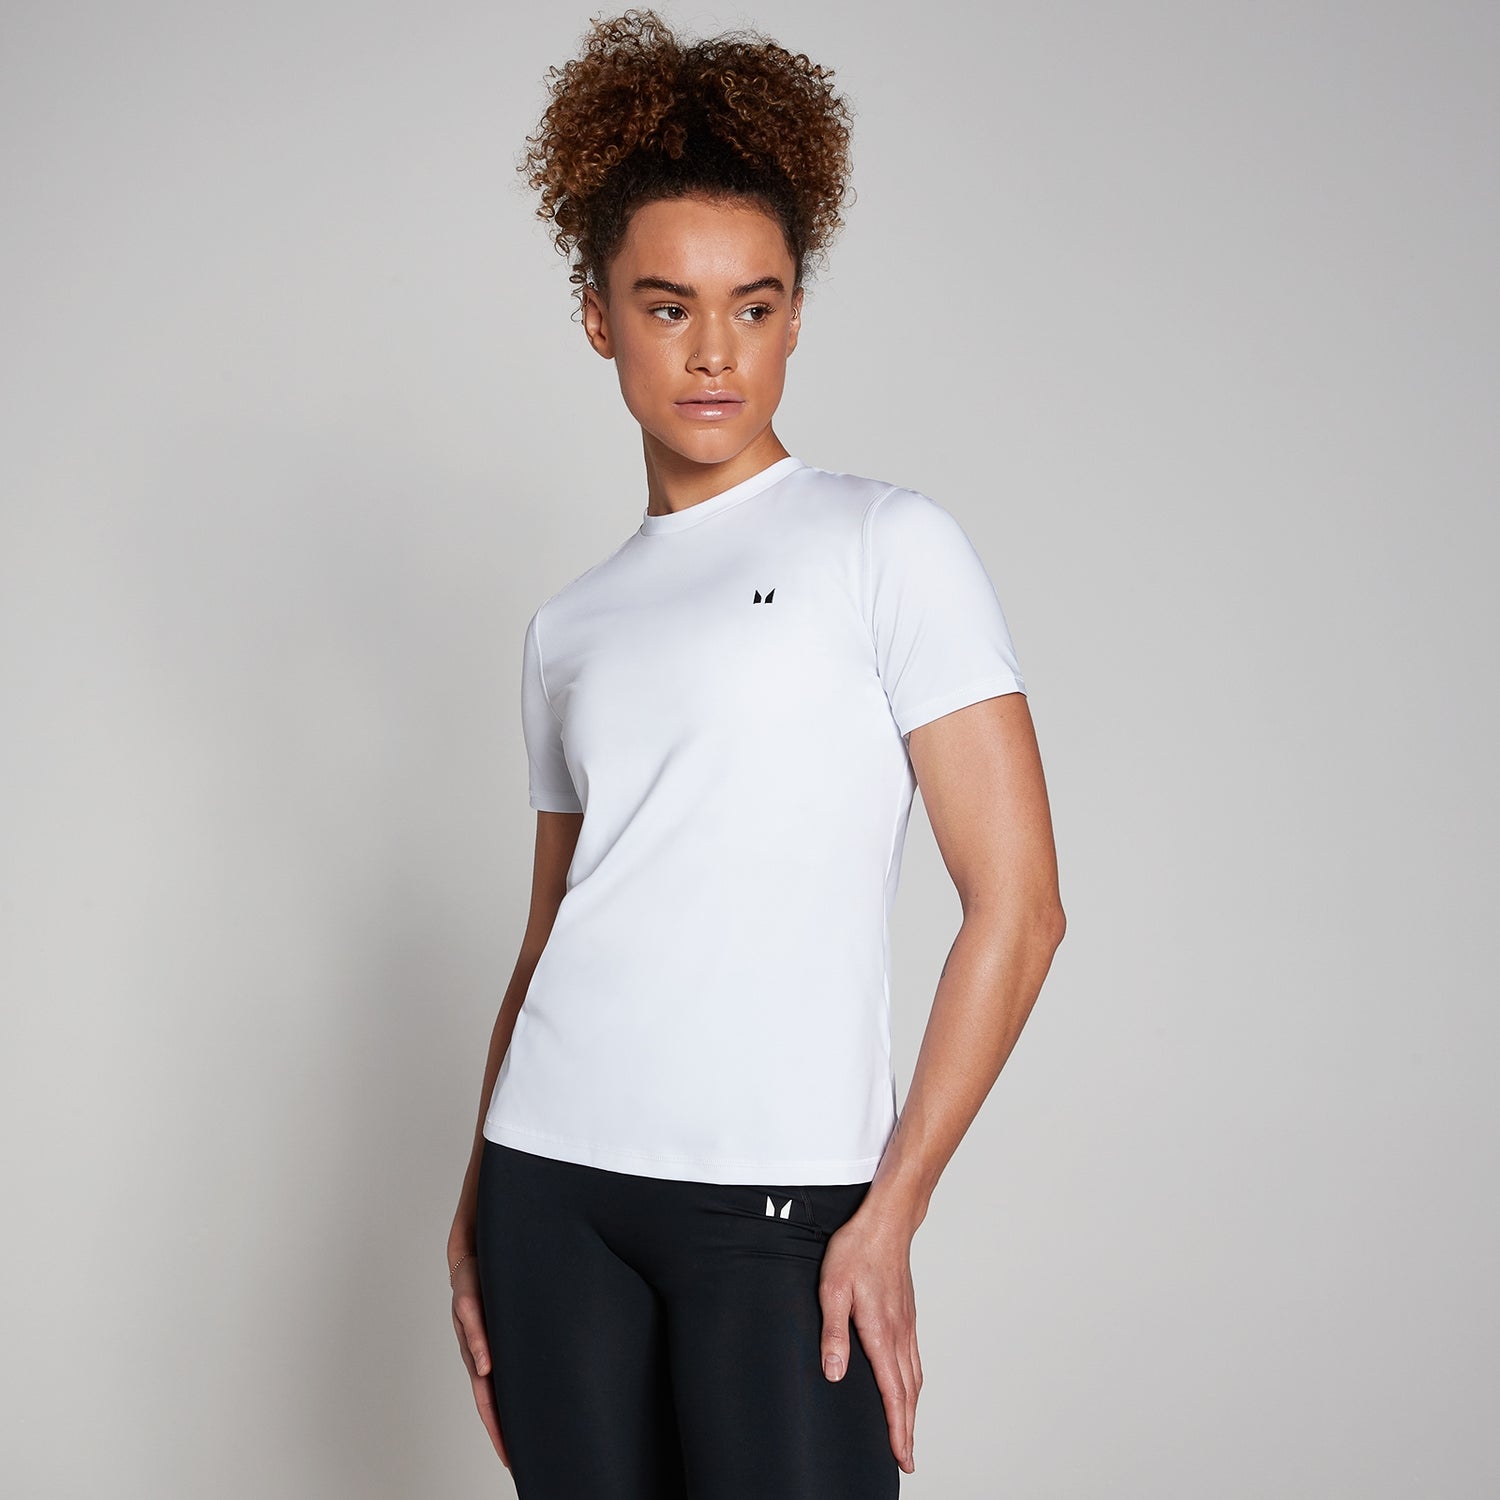 Женская футболка MP Training с короткими рукавами — белый цвет - XXS